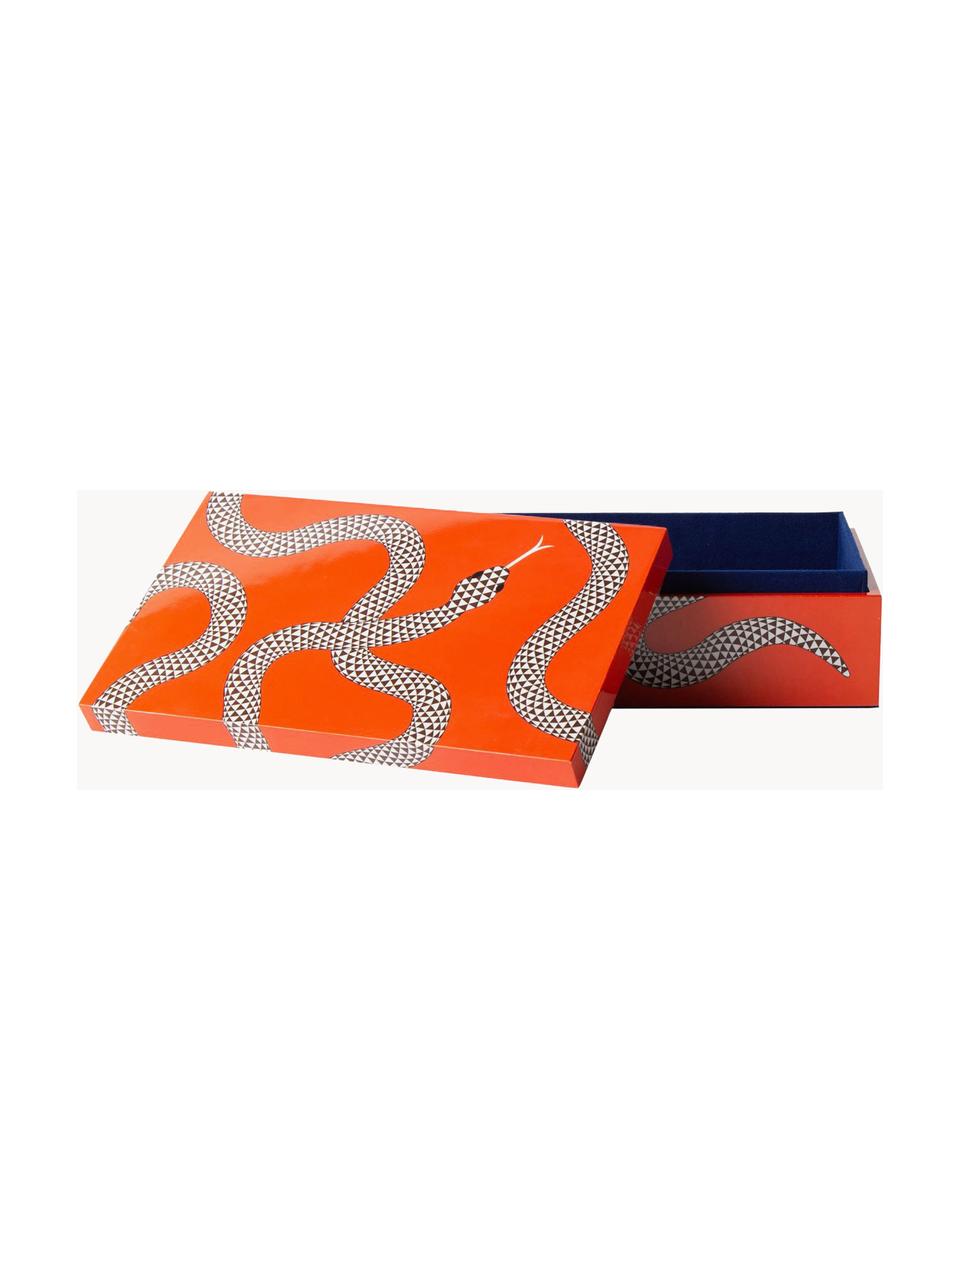 Ręcznie wykonane pudełko do przechowywania Eden, Drewno lakierowane, Pomarańczowy, biały, S 25 x G 15 cm